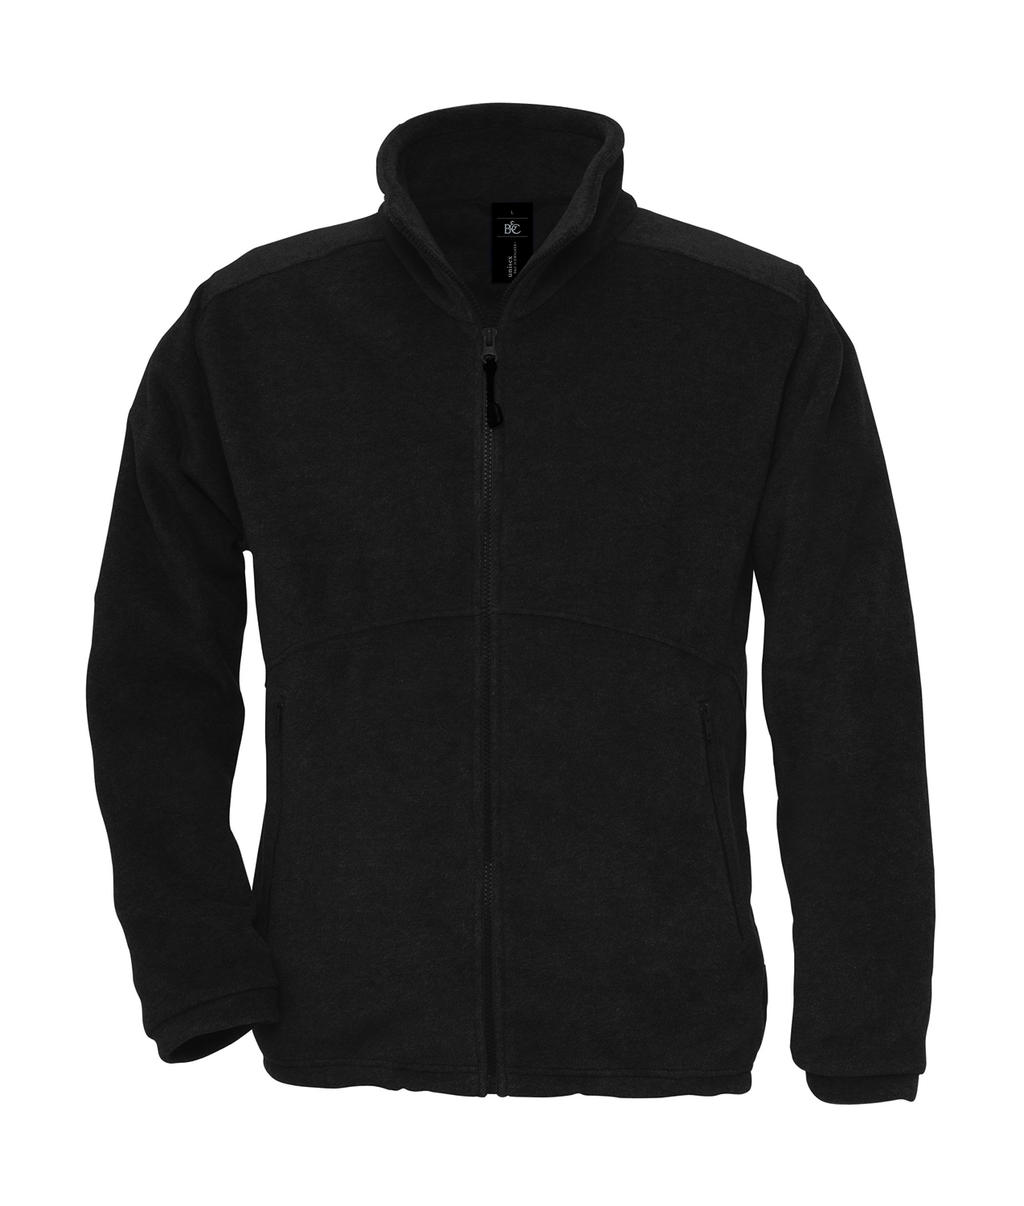  Icewalker+ Outdoor Full Zip Fleece in Farbe Black